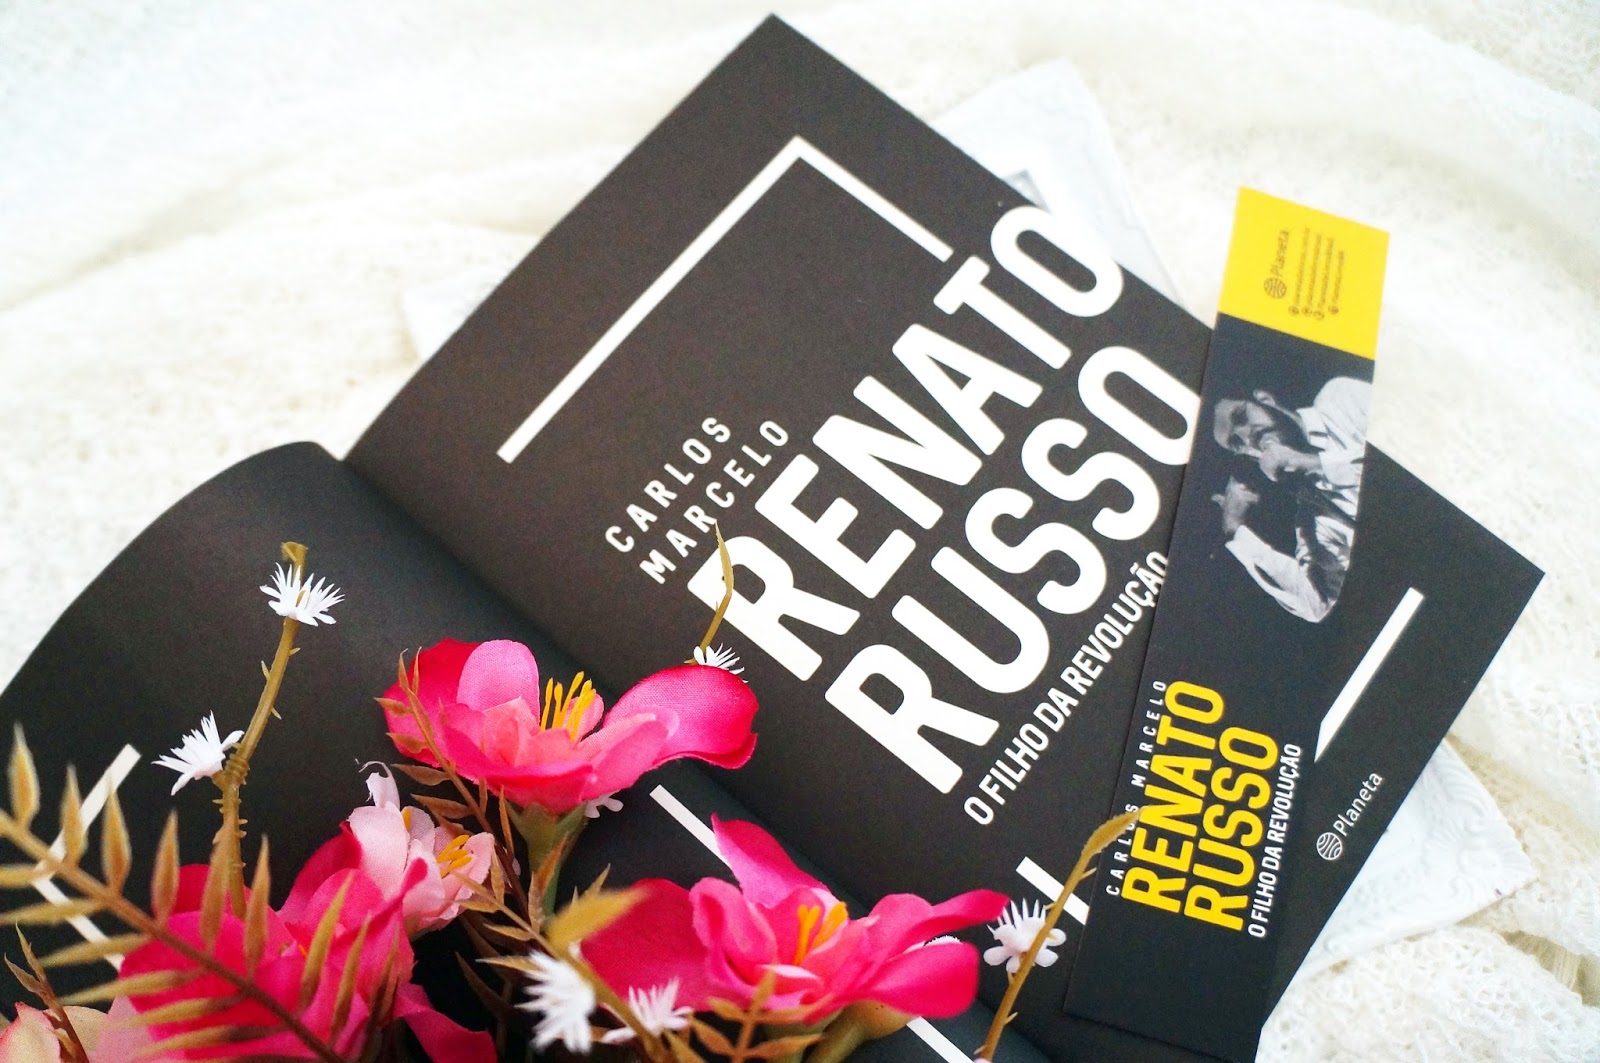 Renato Russo: O Filho da Revoluçao: Marcelo, Carlos: 9788522009077:  : Books